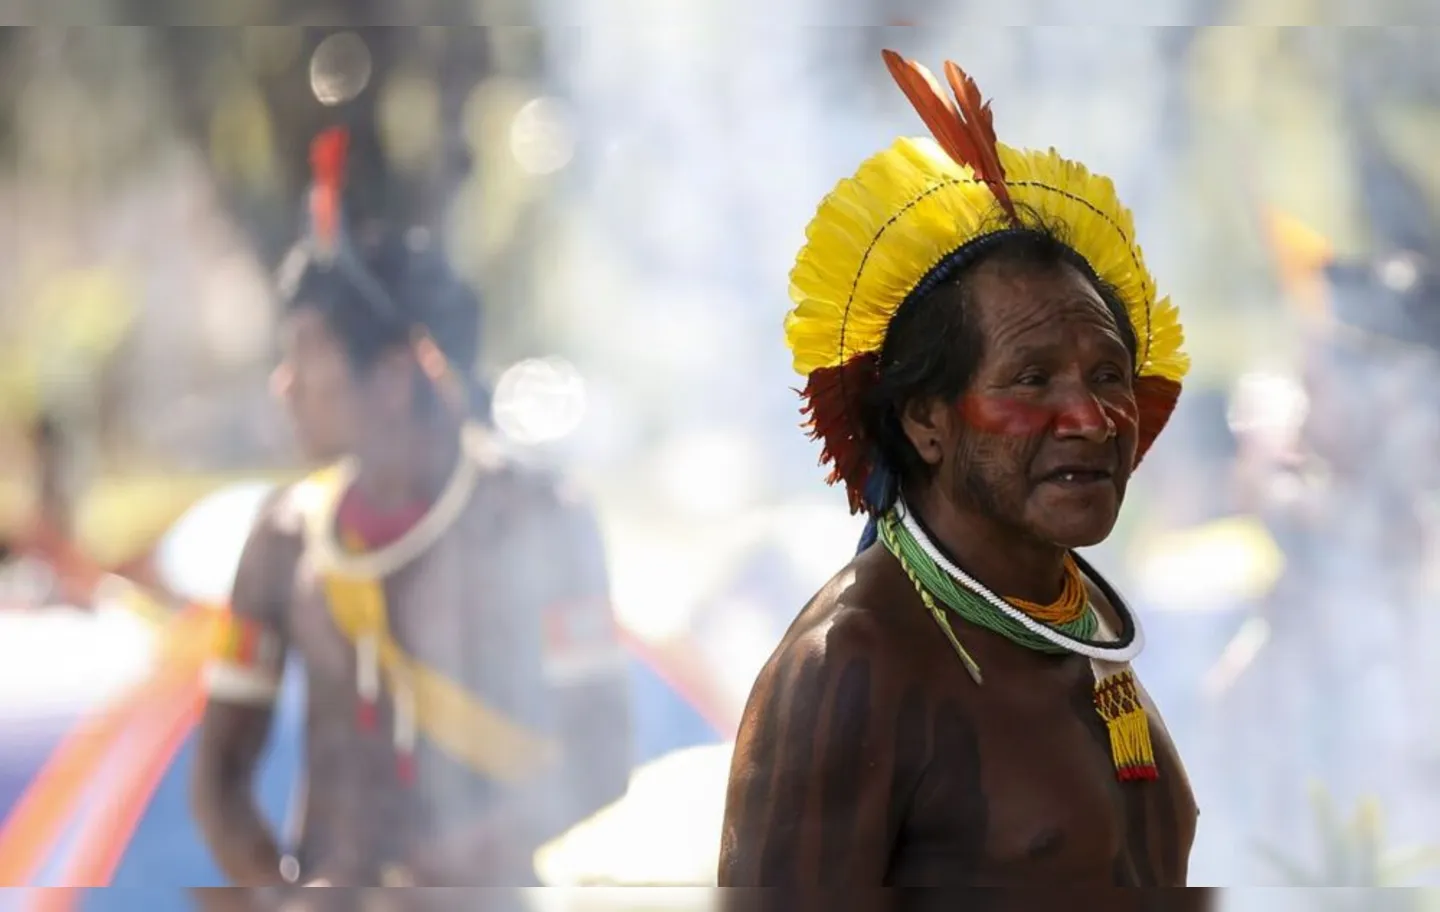 Um total de 101 indígenas Yanomami perdeu a vida por resistir à mineração fora da lei